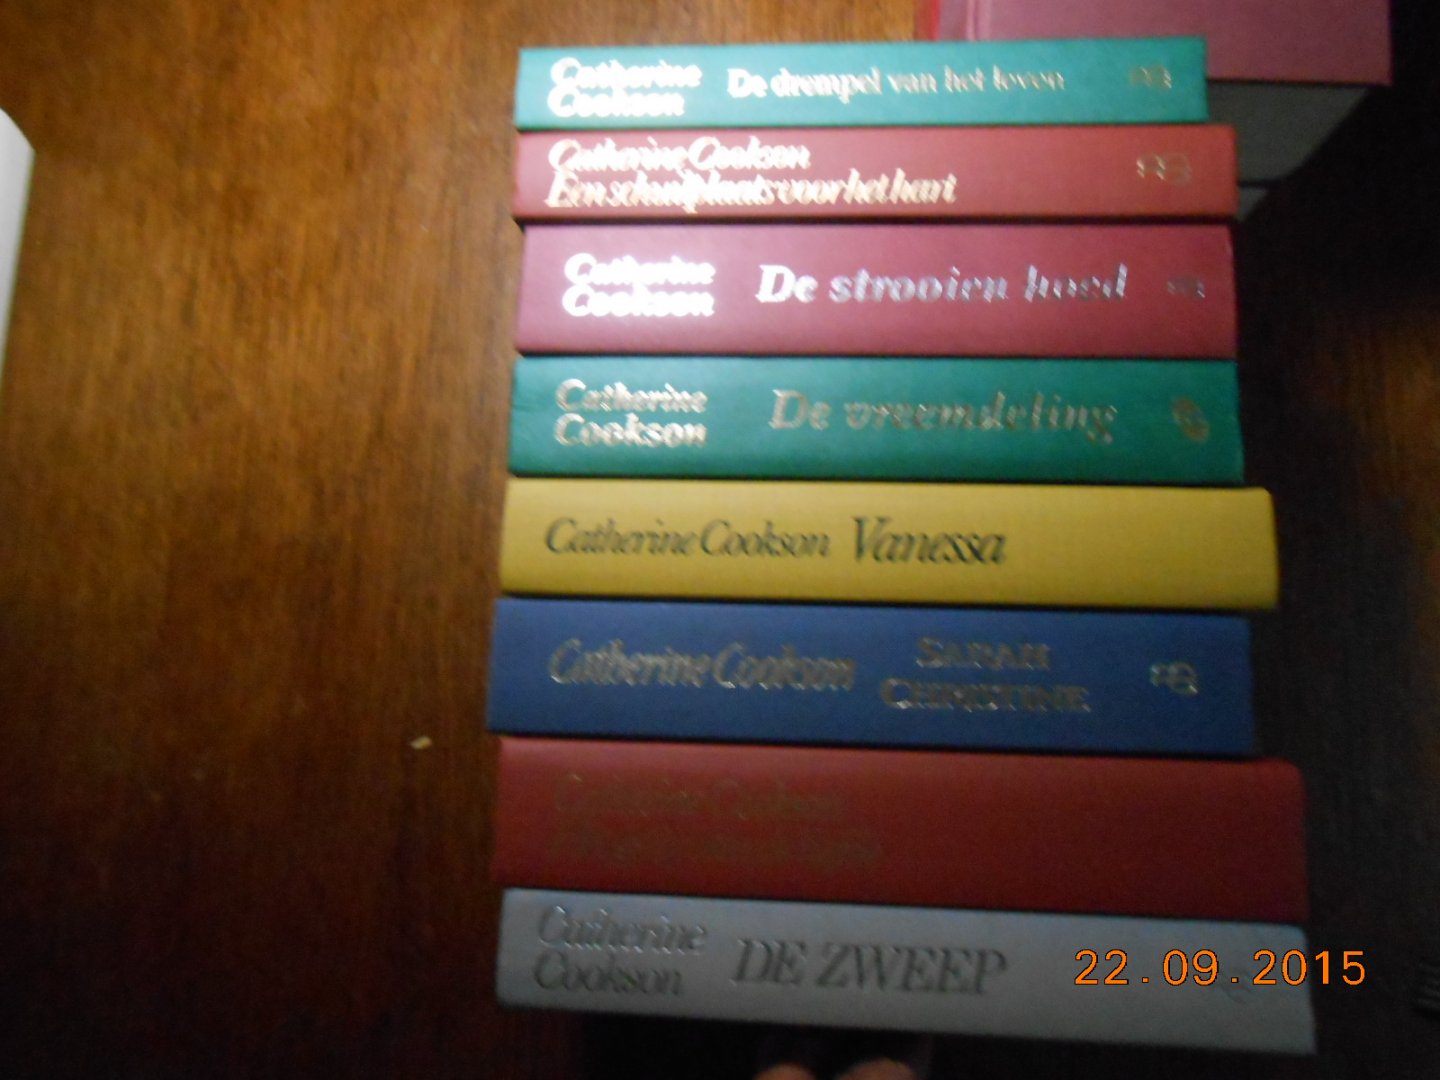 Cookson Catherine - 8 romans van Cookson zie foto's